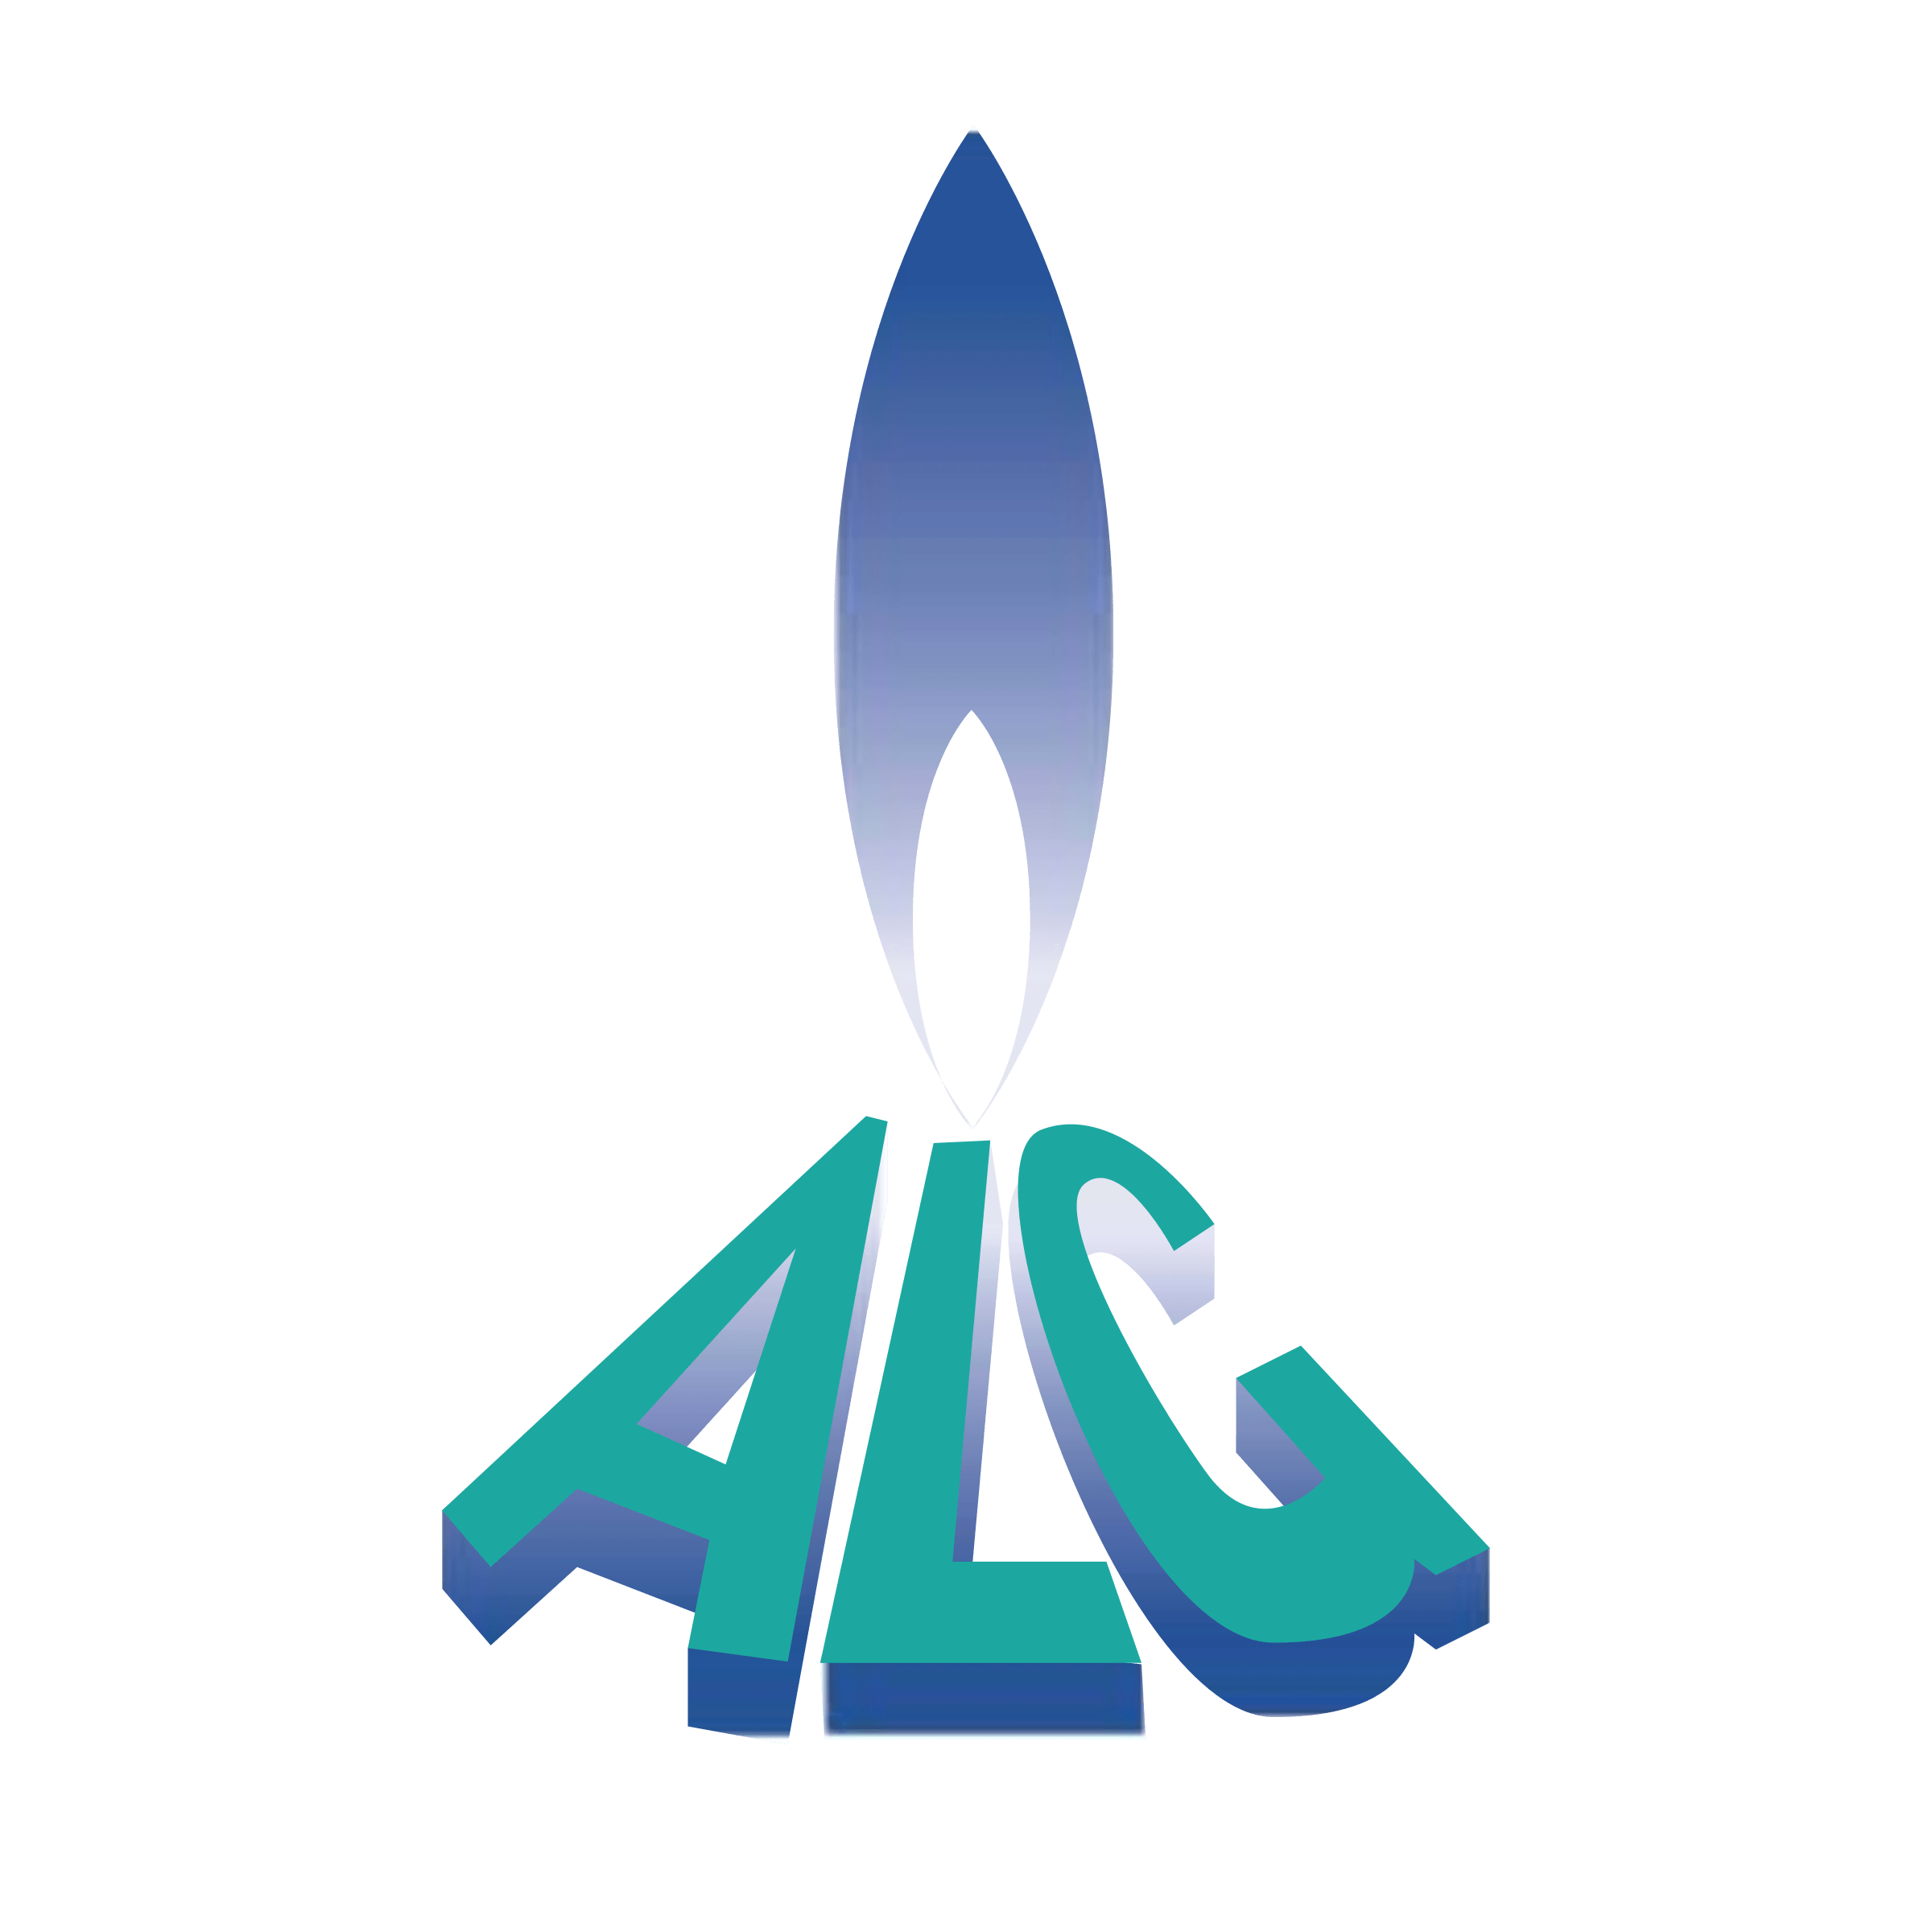 Alg Logo - ALG Logo PNG Transparent & SVG Vector